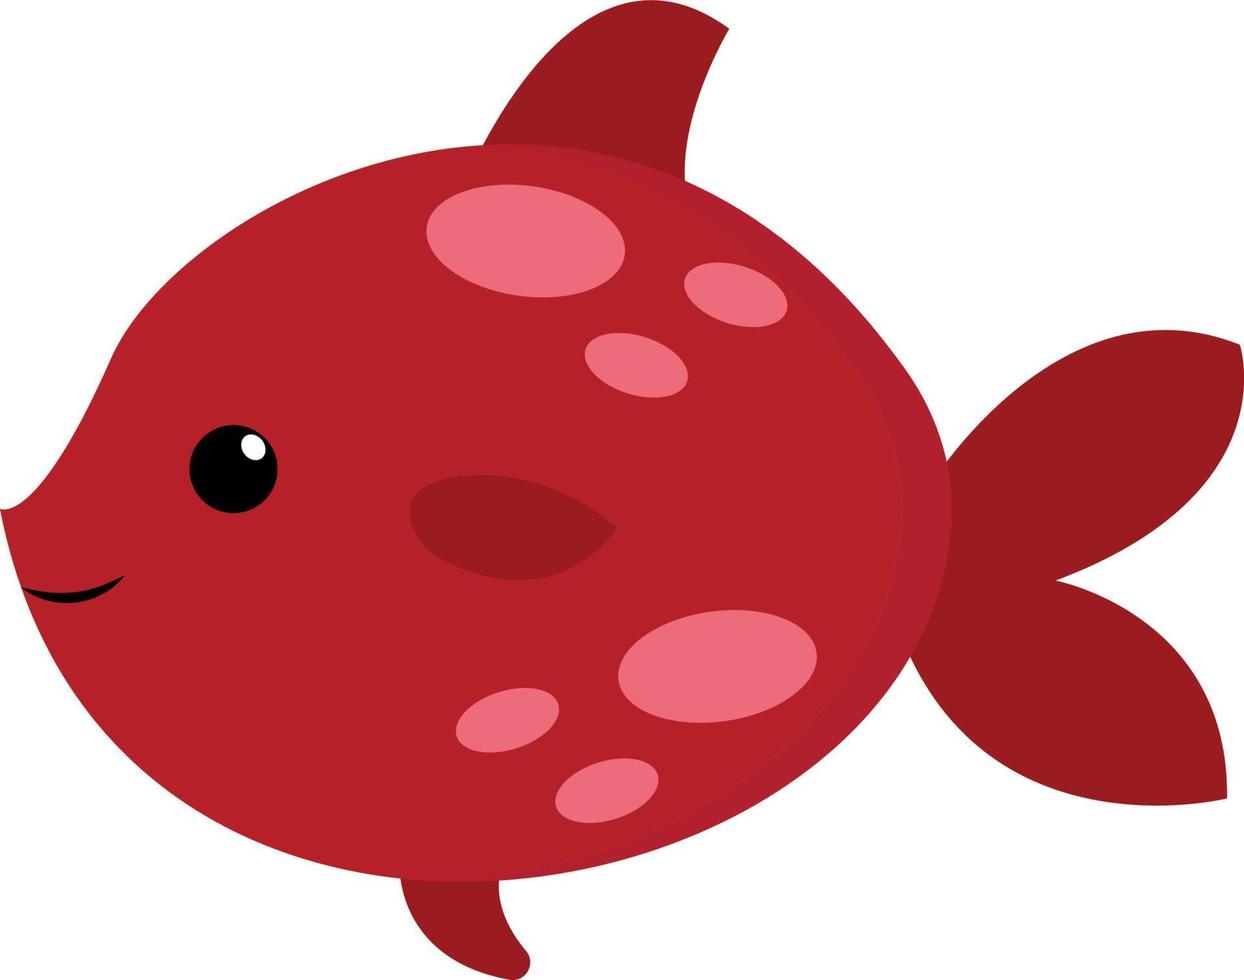 söt röd fisk, illustration, vektor på vit bakgrund.